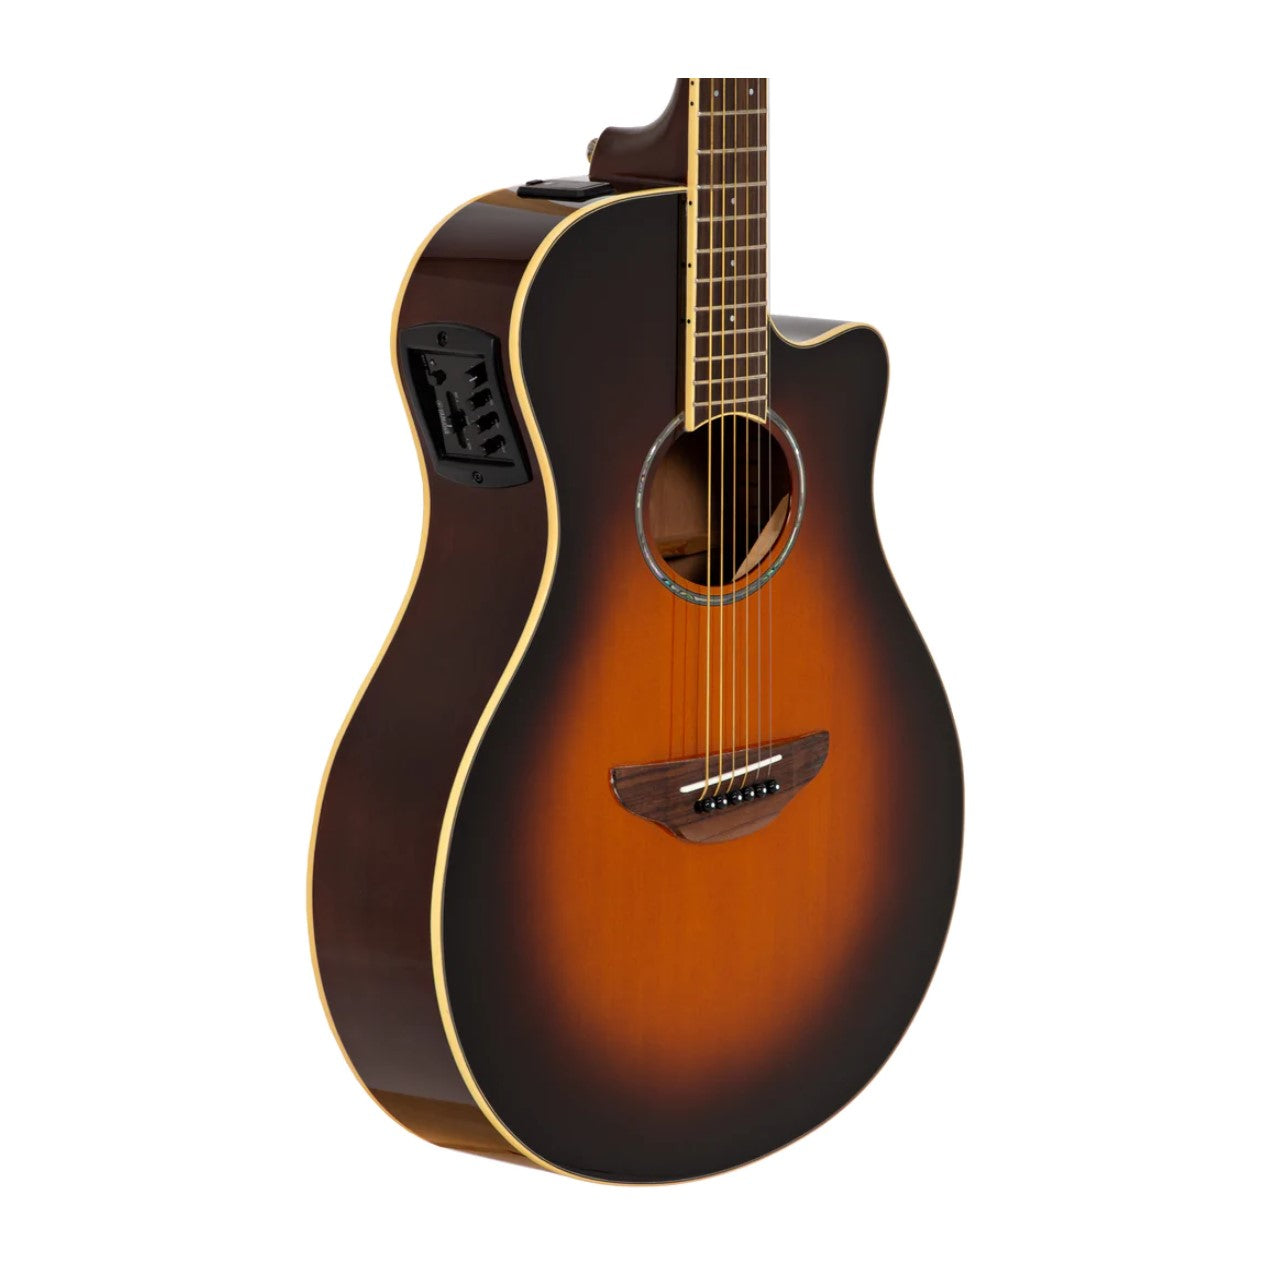 Yamaha Guitarra ElectroAcustica cpx600ovs sunburst